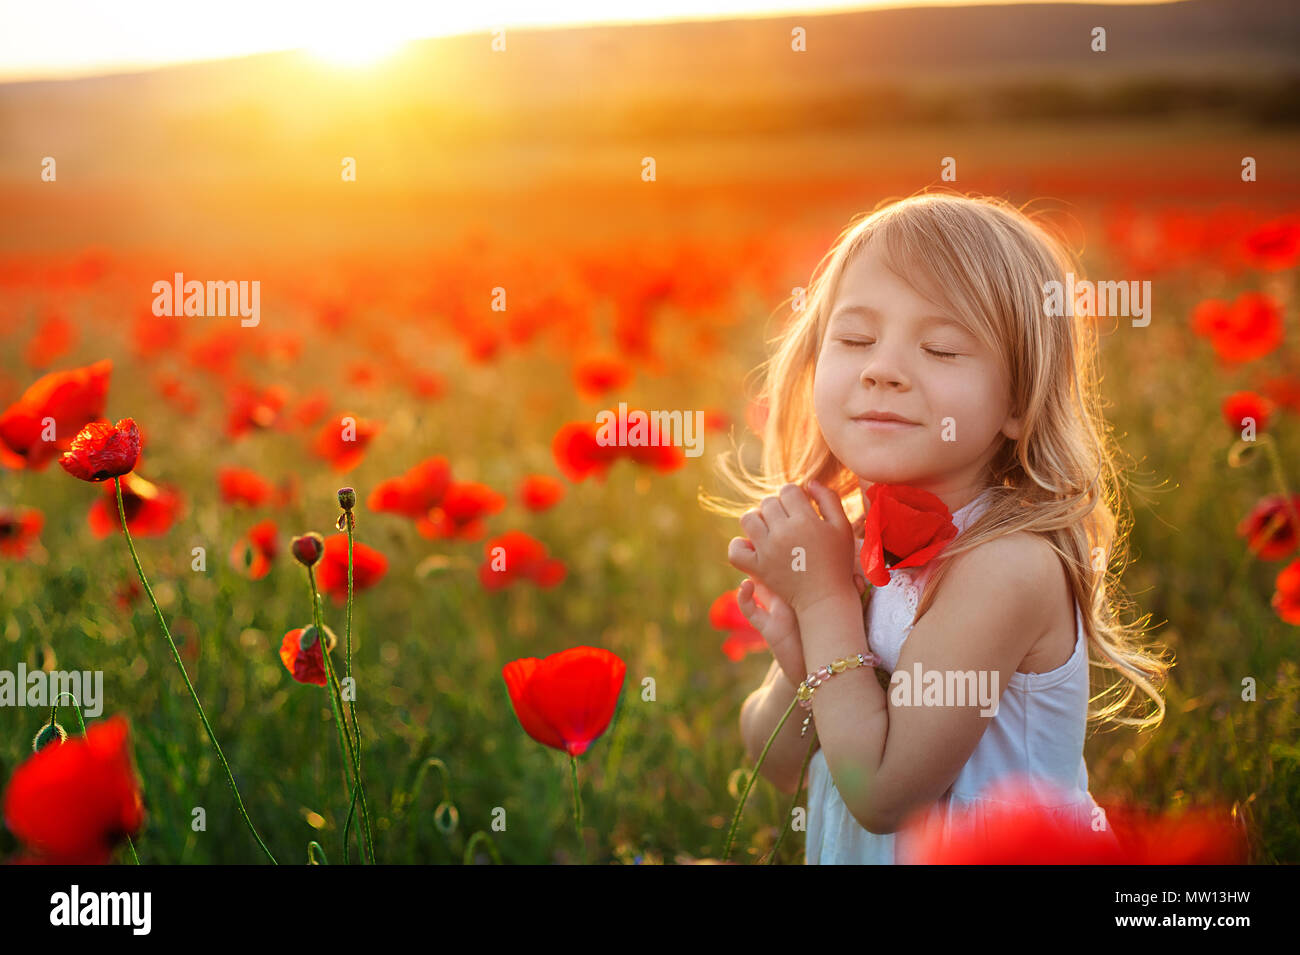 Niña soñando en el parque. Adorable niña chica abraza una flor de adormidera. Niño y flores, verano, naturaleza y diversión. Vacaciones de verano. Foto de stock